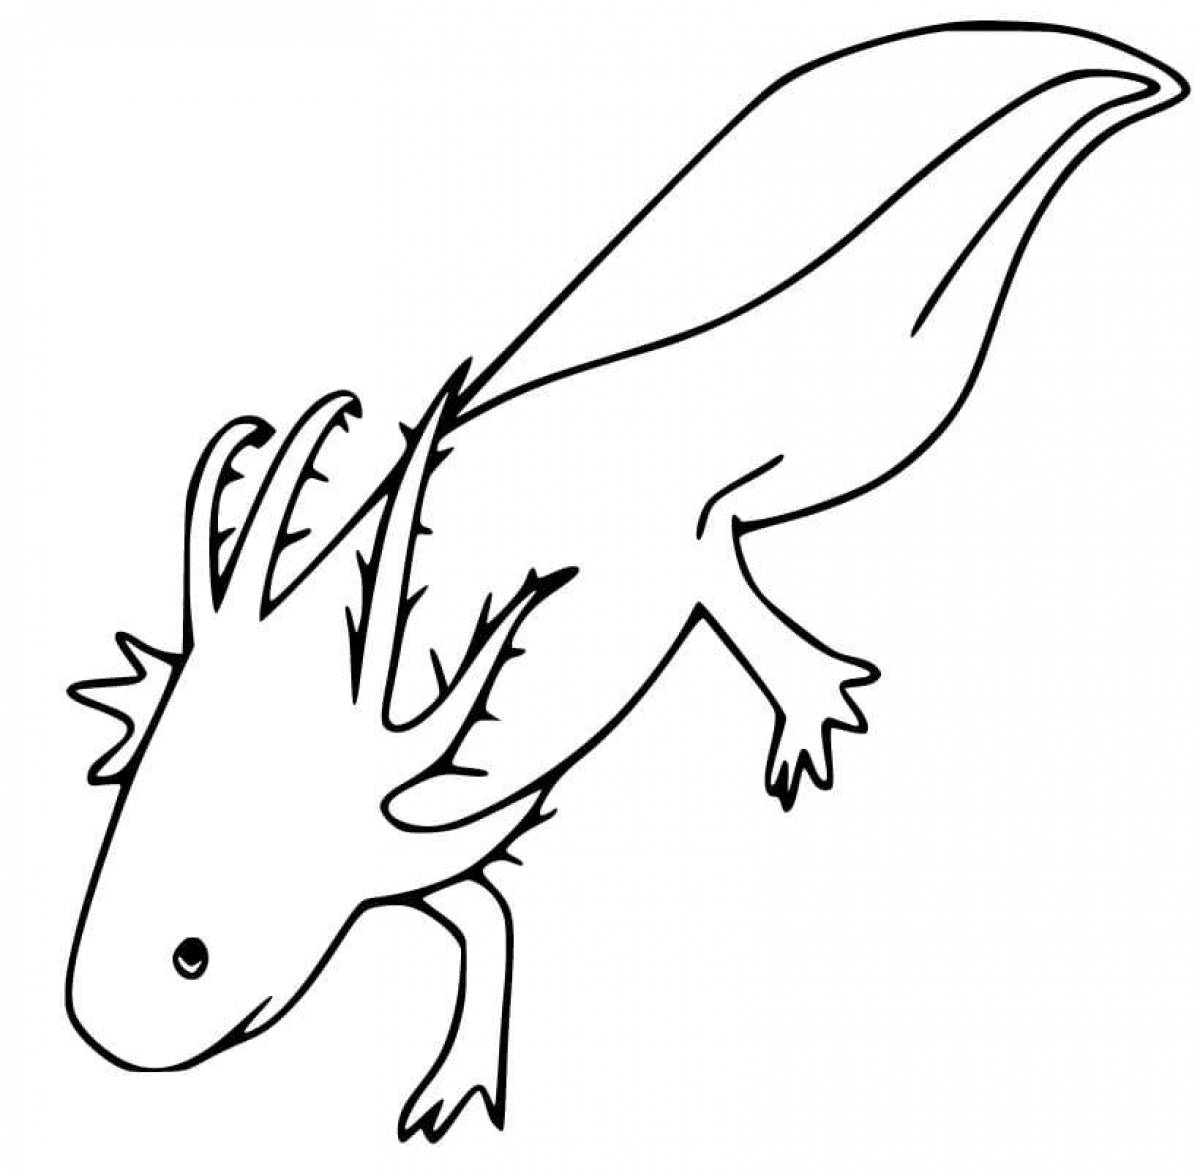 Fun coloring axolotl